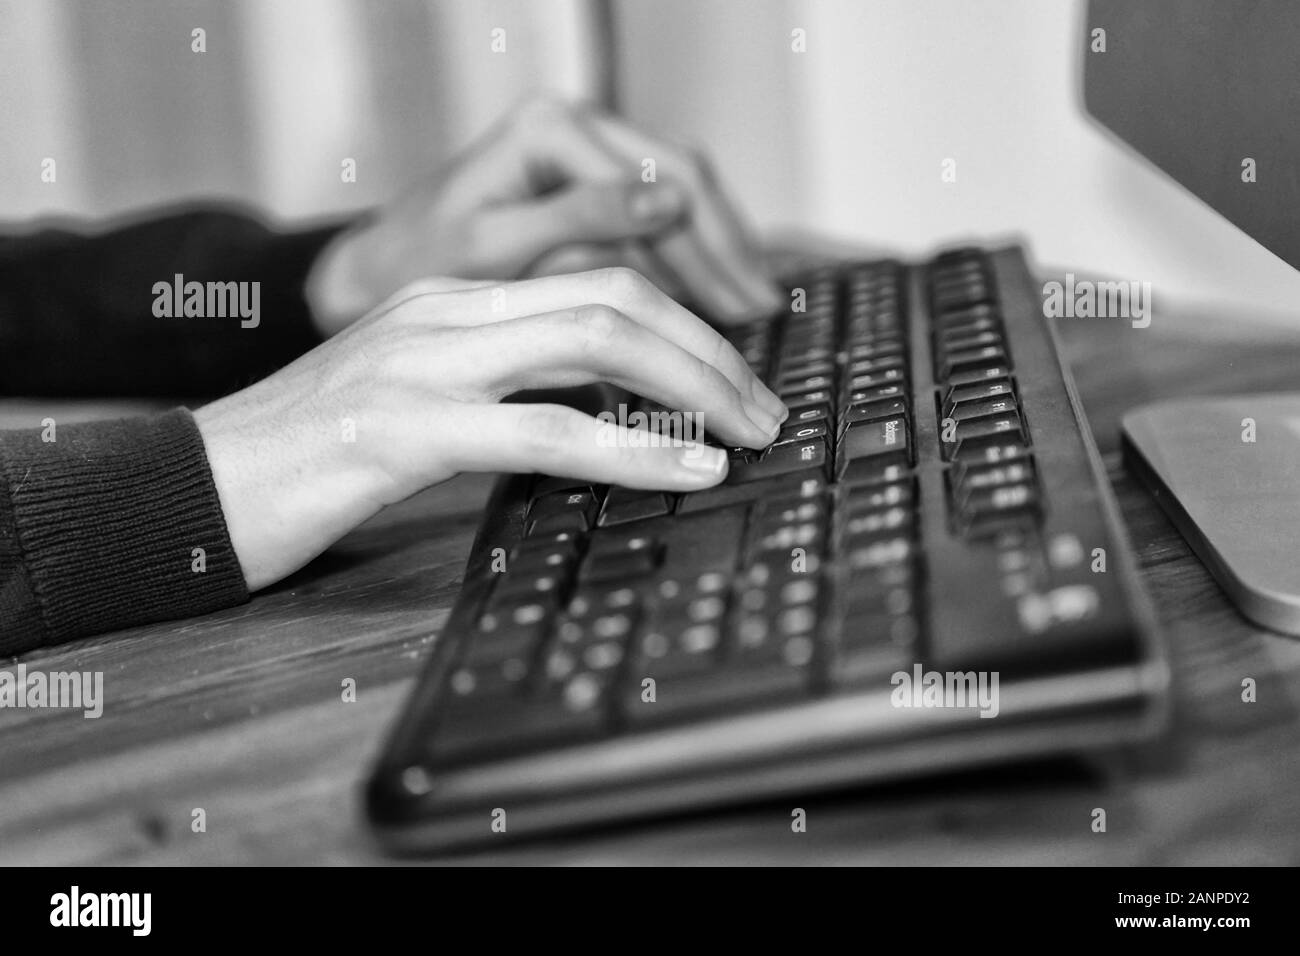 Image en noir et blanc d'une entreprise de travail mains et typing on laptop keyboard in office Banque D'Images